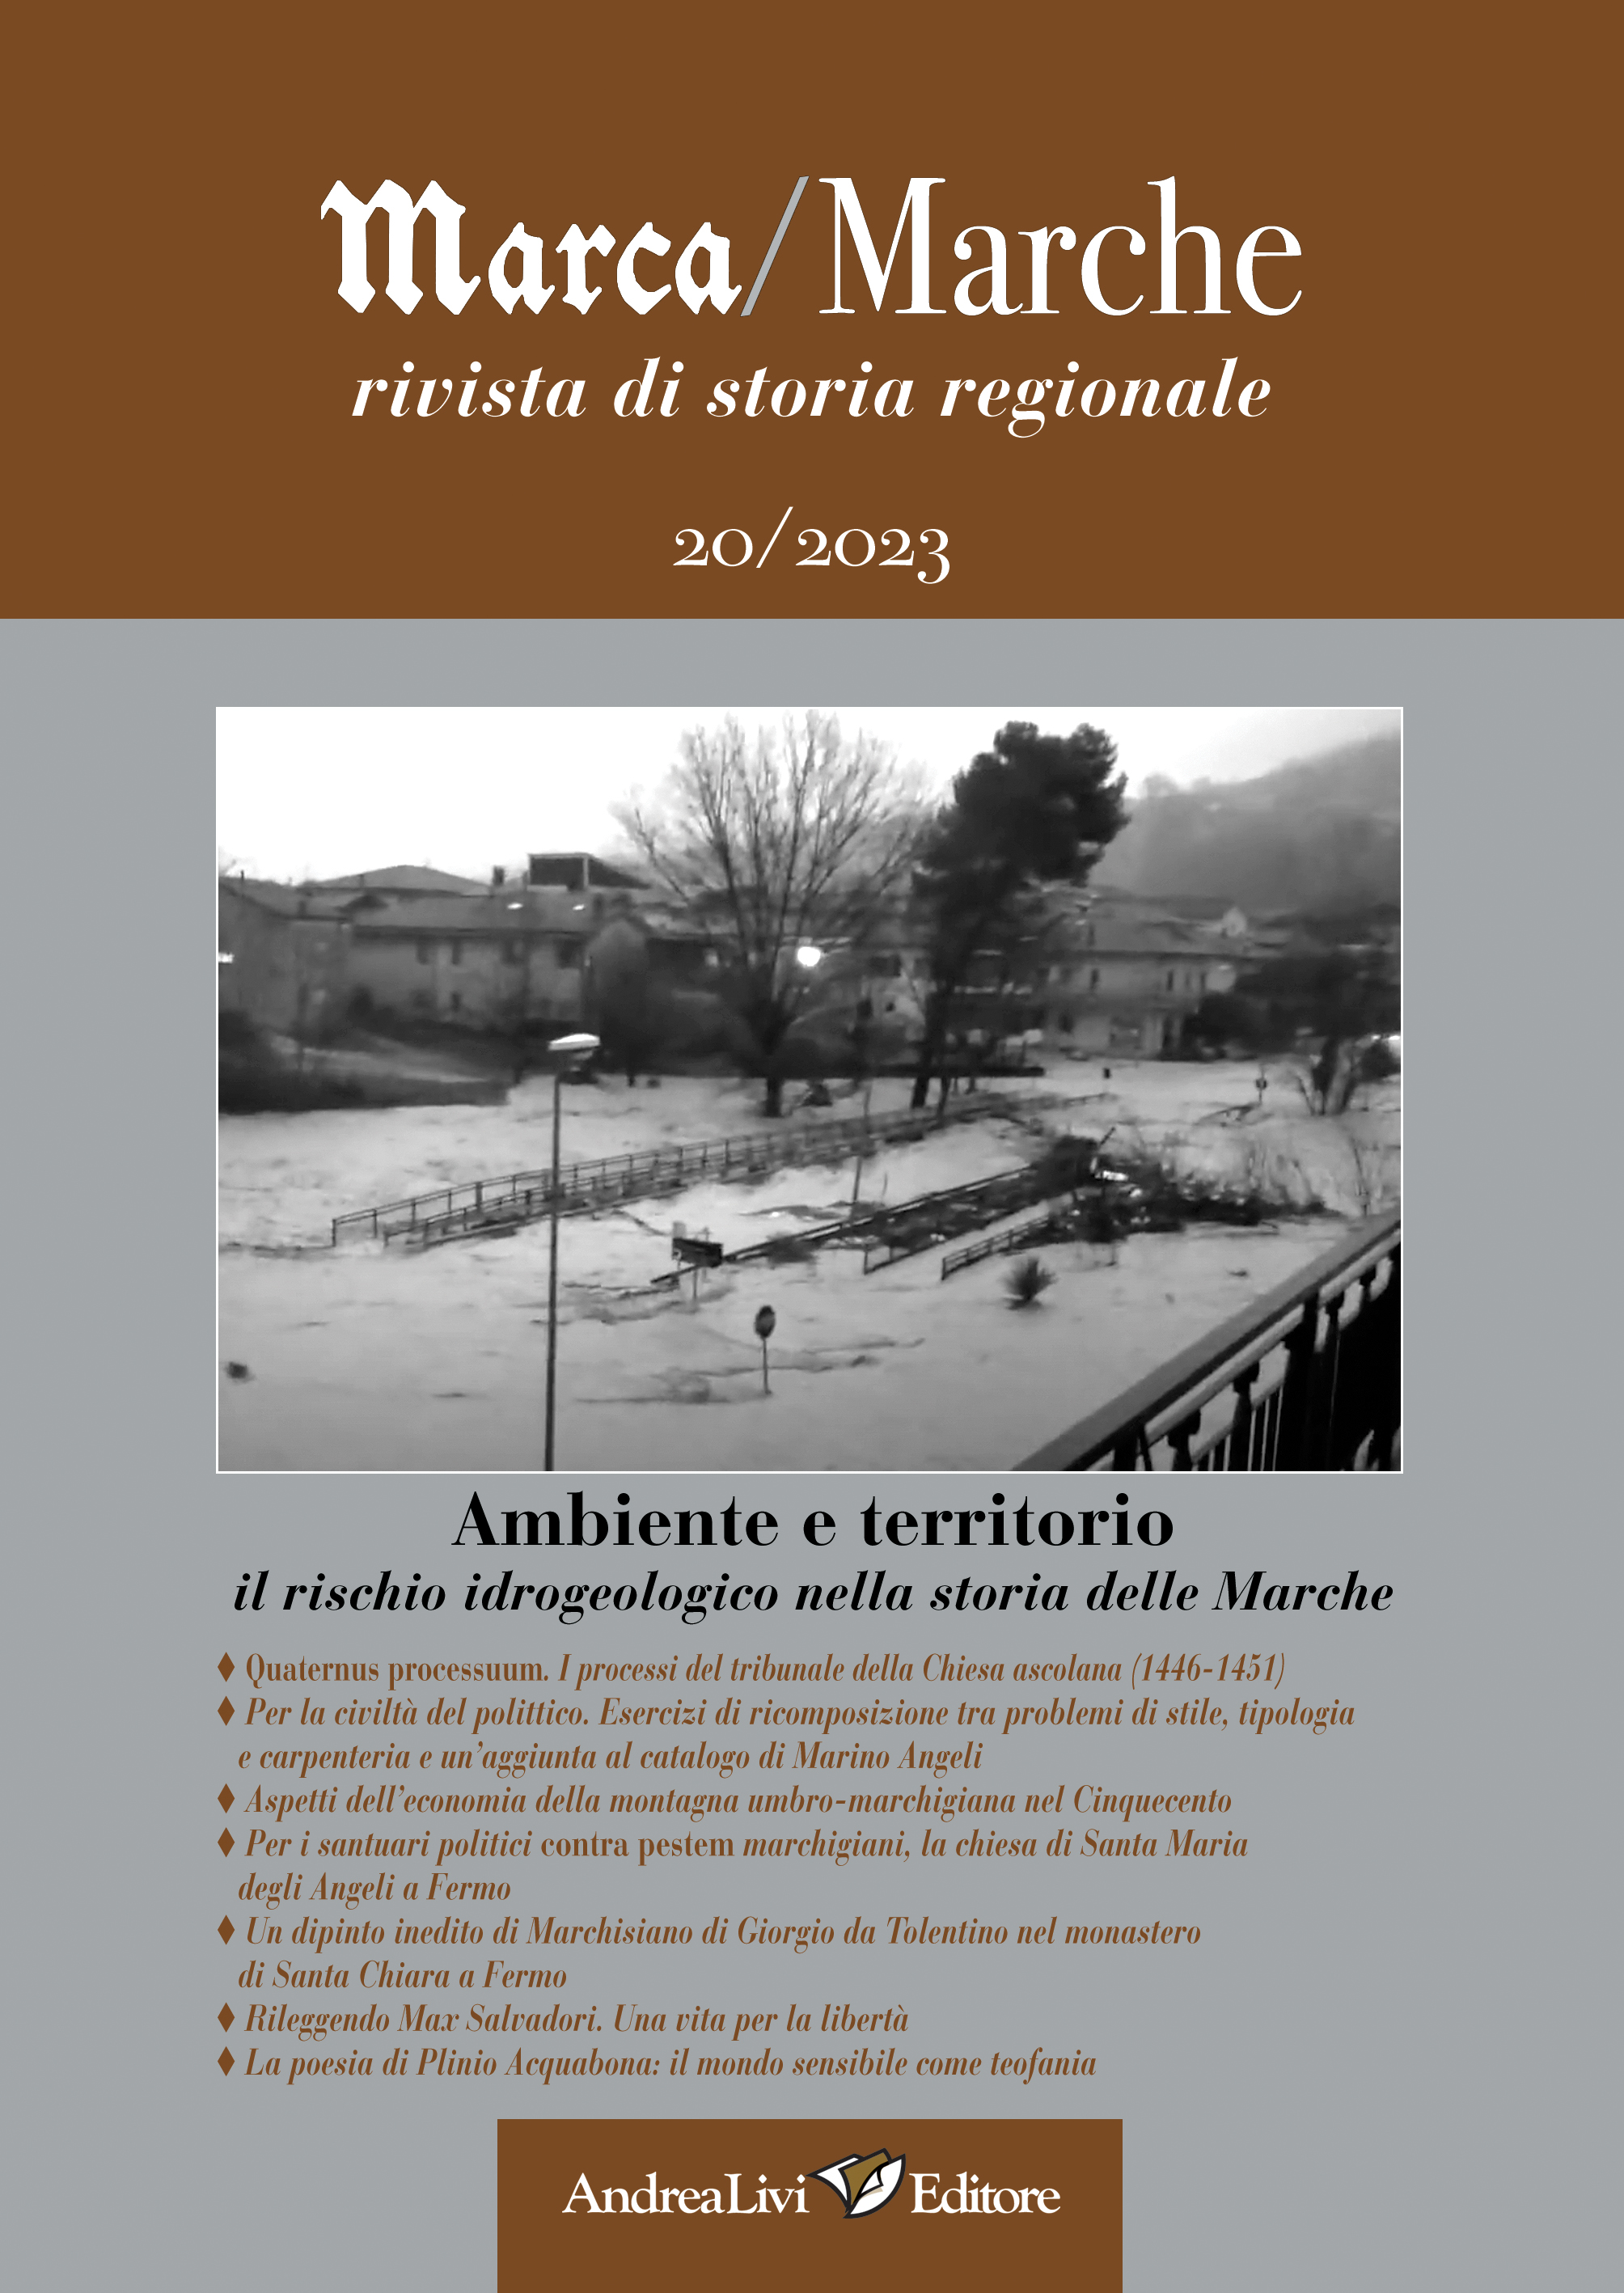 Ambiente e territorio: il rischio idrogeologico nella storia delle Marche, a cura di Carlo Pongetti, «Marca/Marche», 20 (2023)